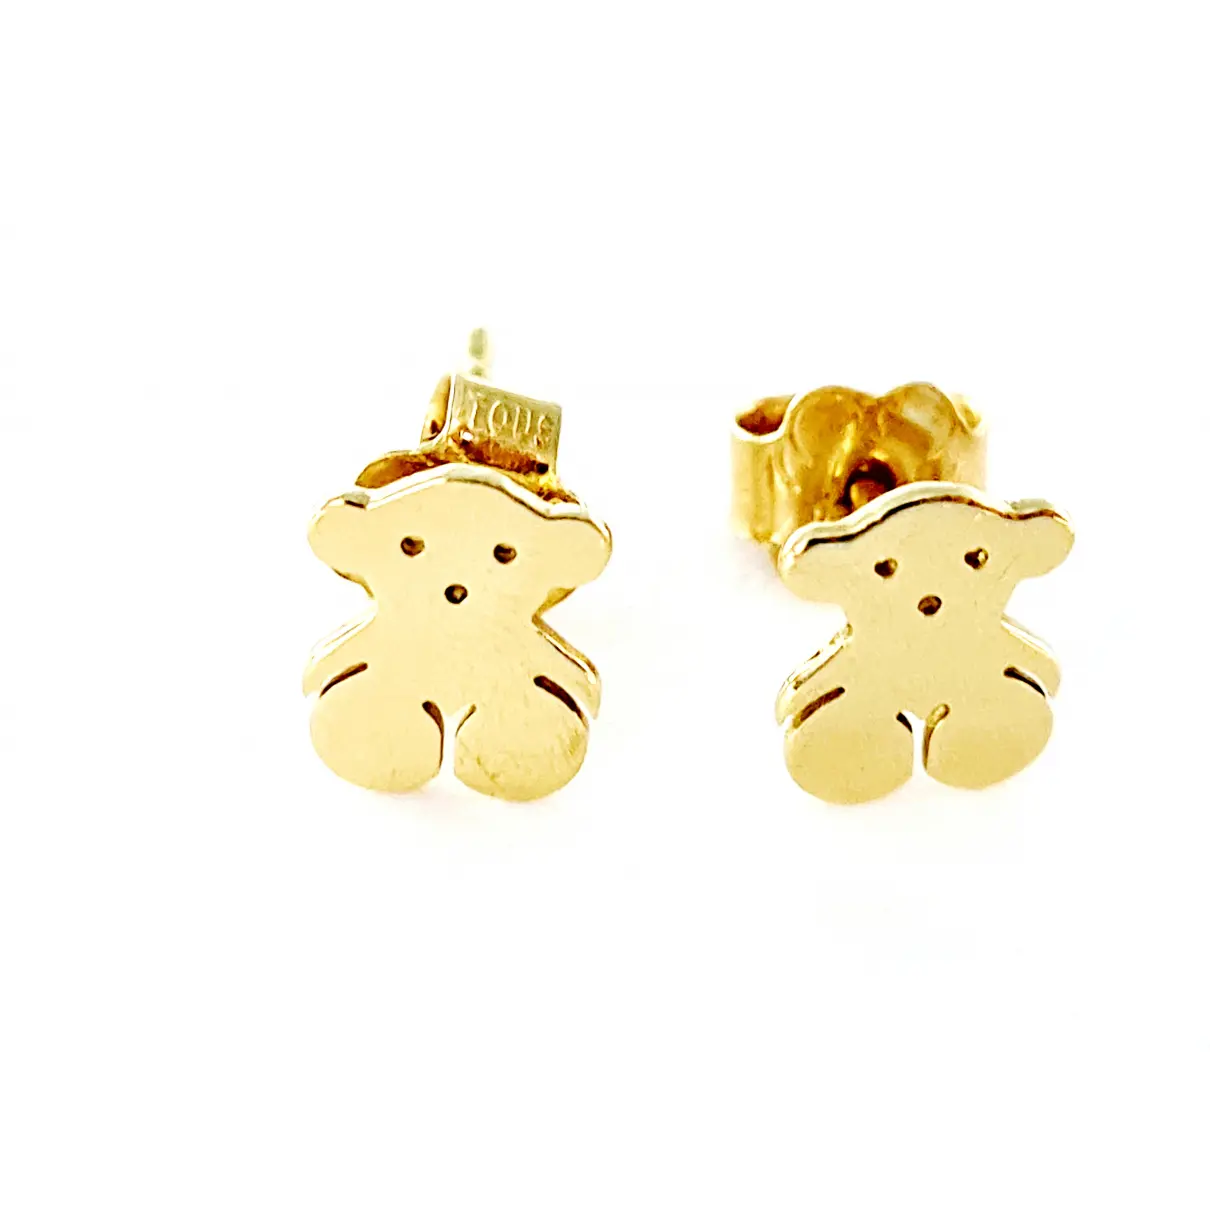 Buy Atelier Tous Yellow gold earrings online